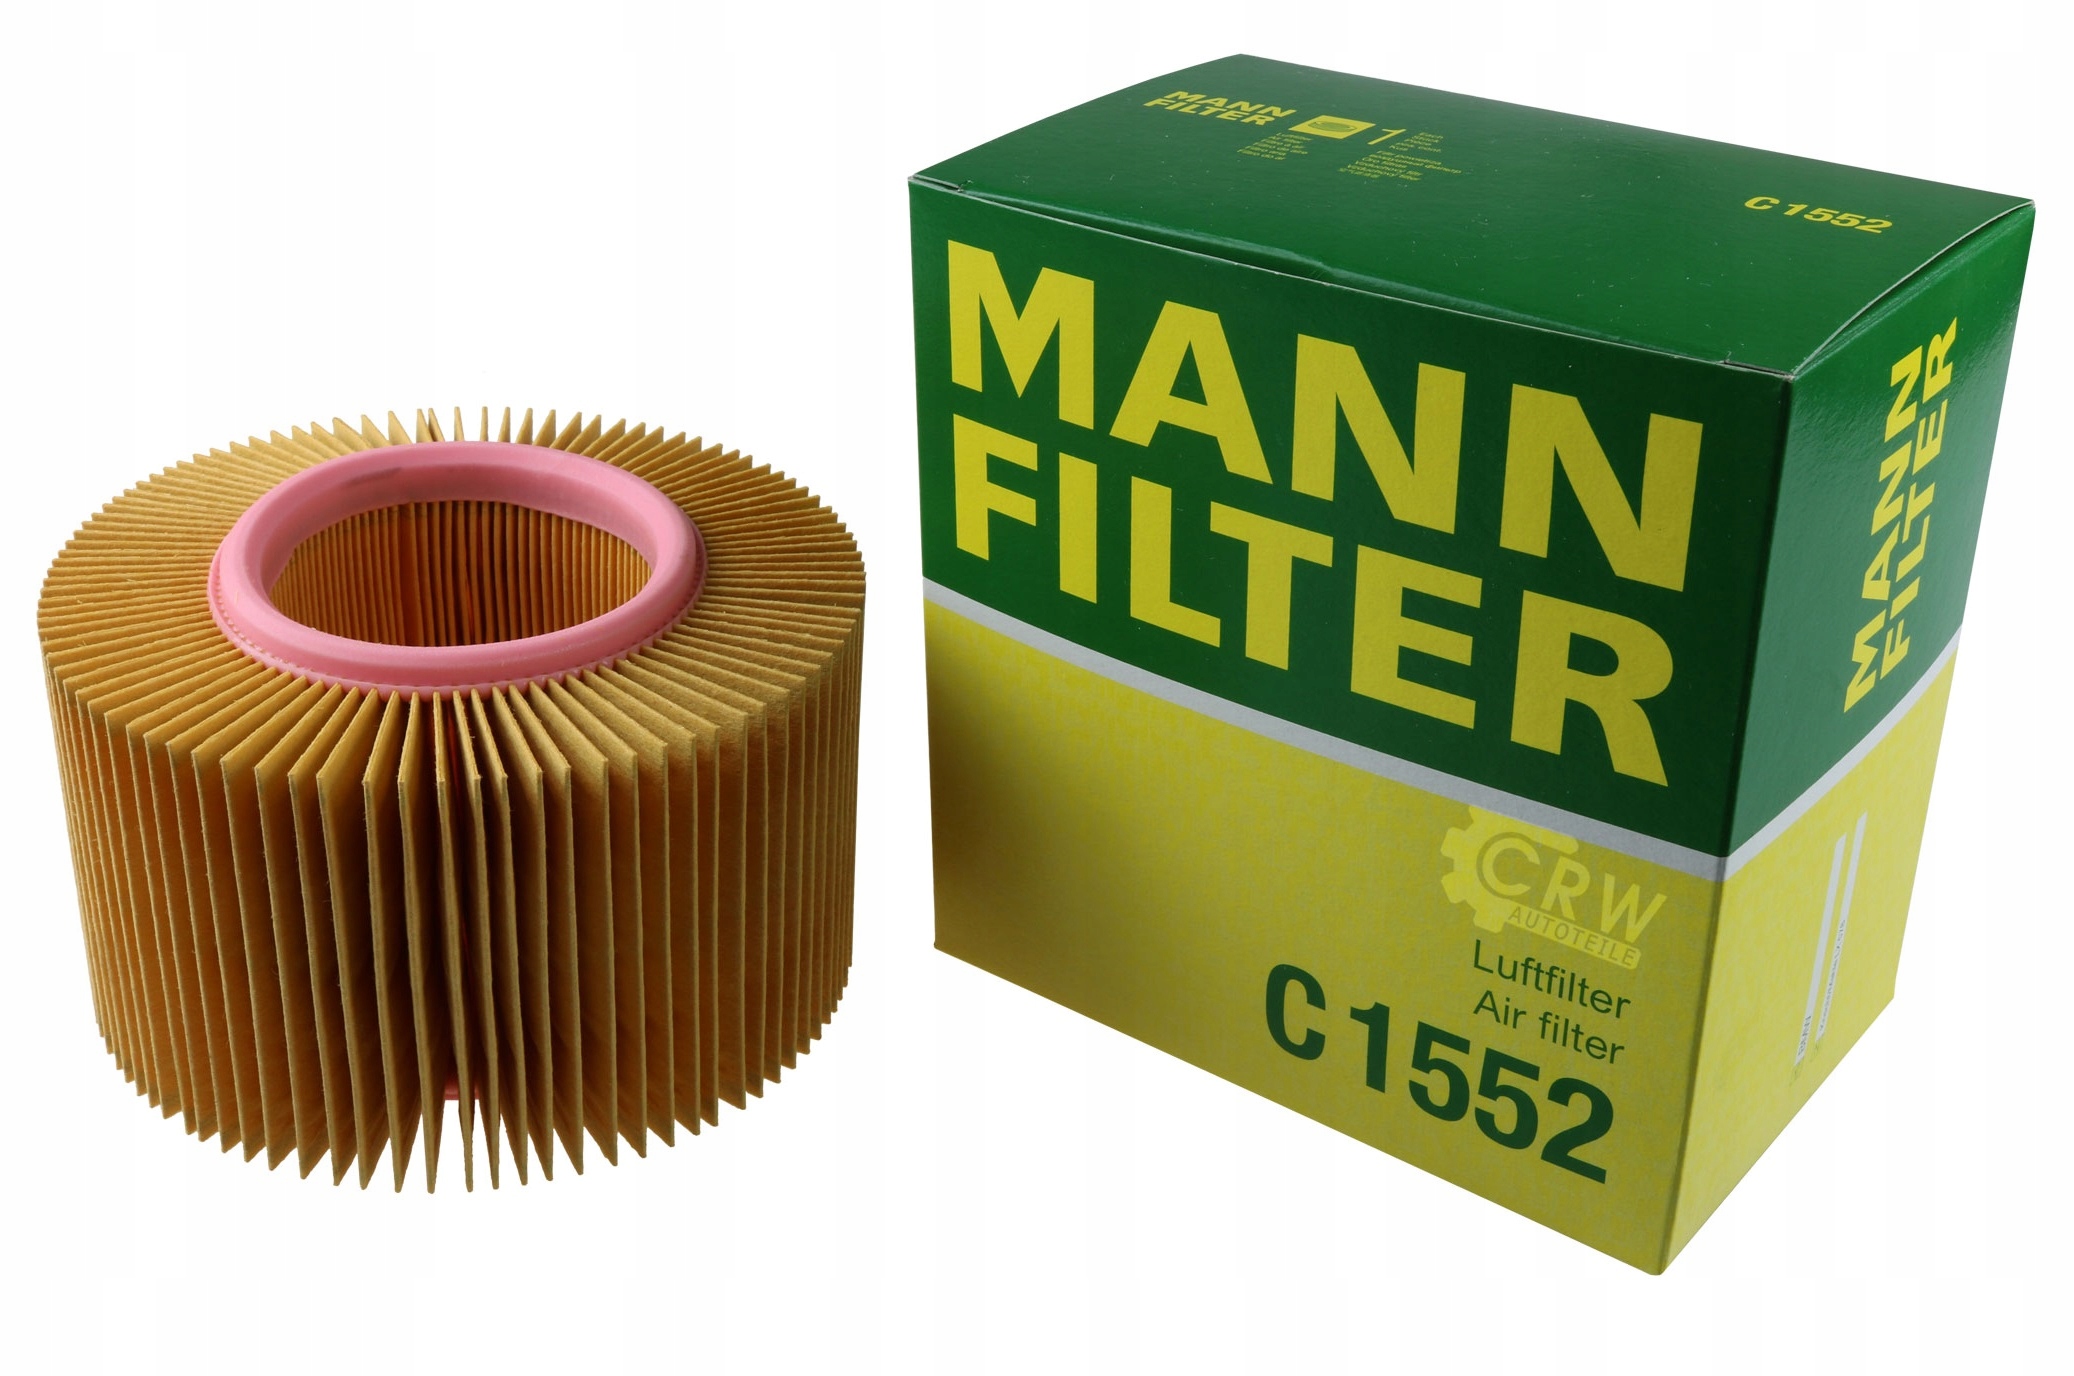 Масляный фильтр манн оригинал. Фильтр воздушный BMW r1150rt. Mann-Filter c 2420. Фильтр Манн воздушный f 2000. Фильтр масляный r1100rt.